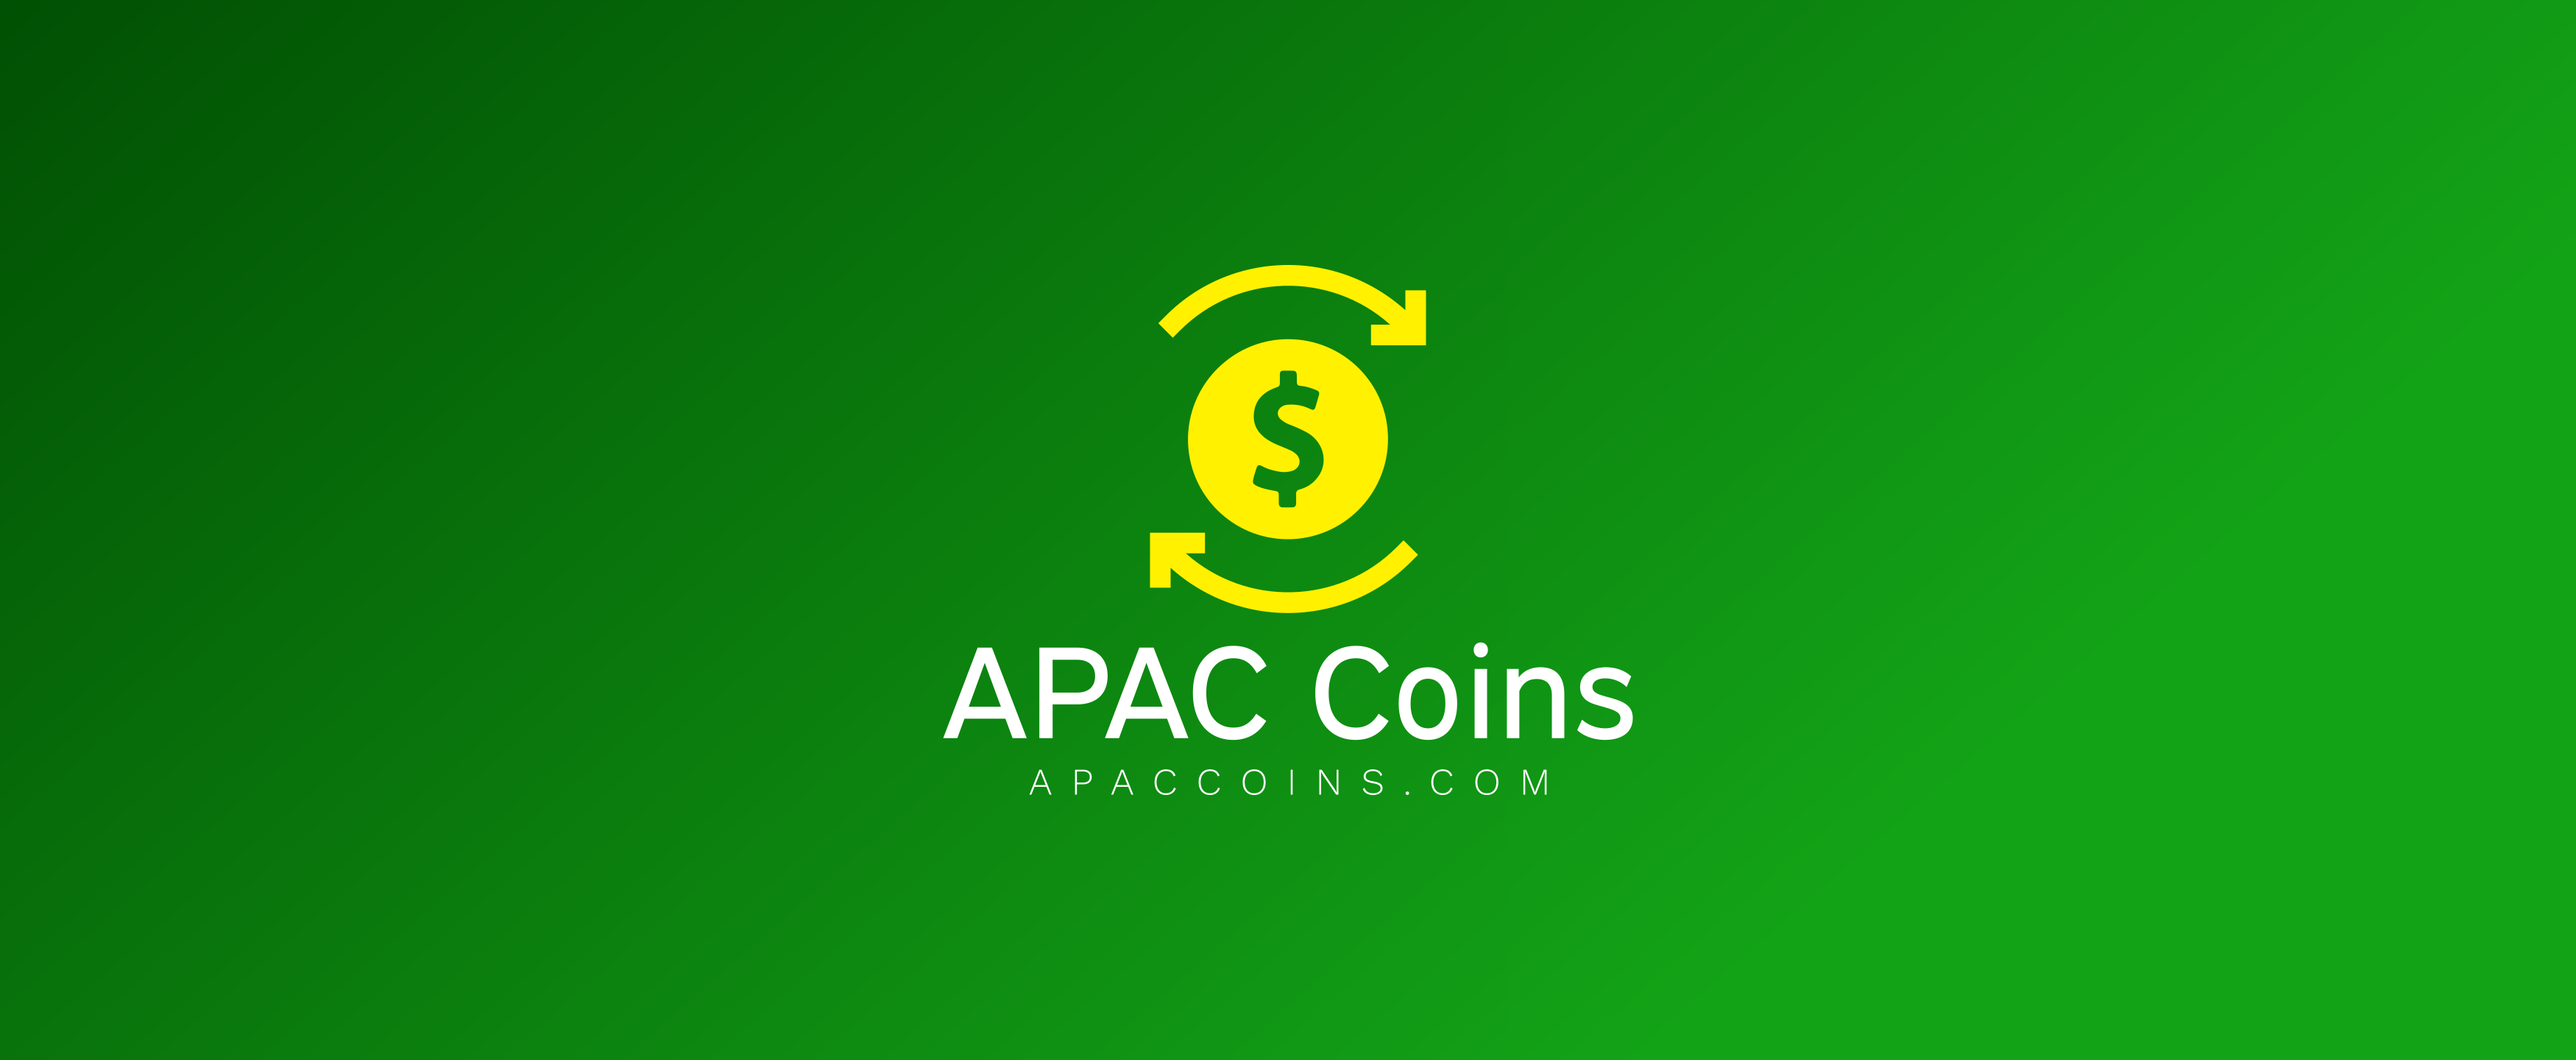 APAC Coins